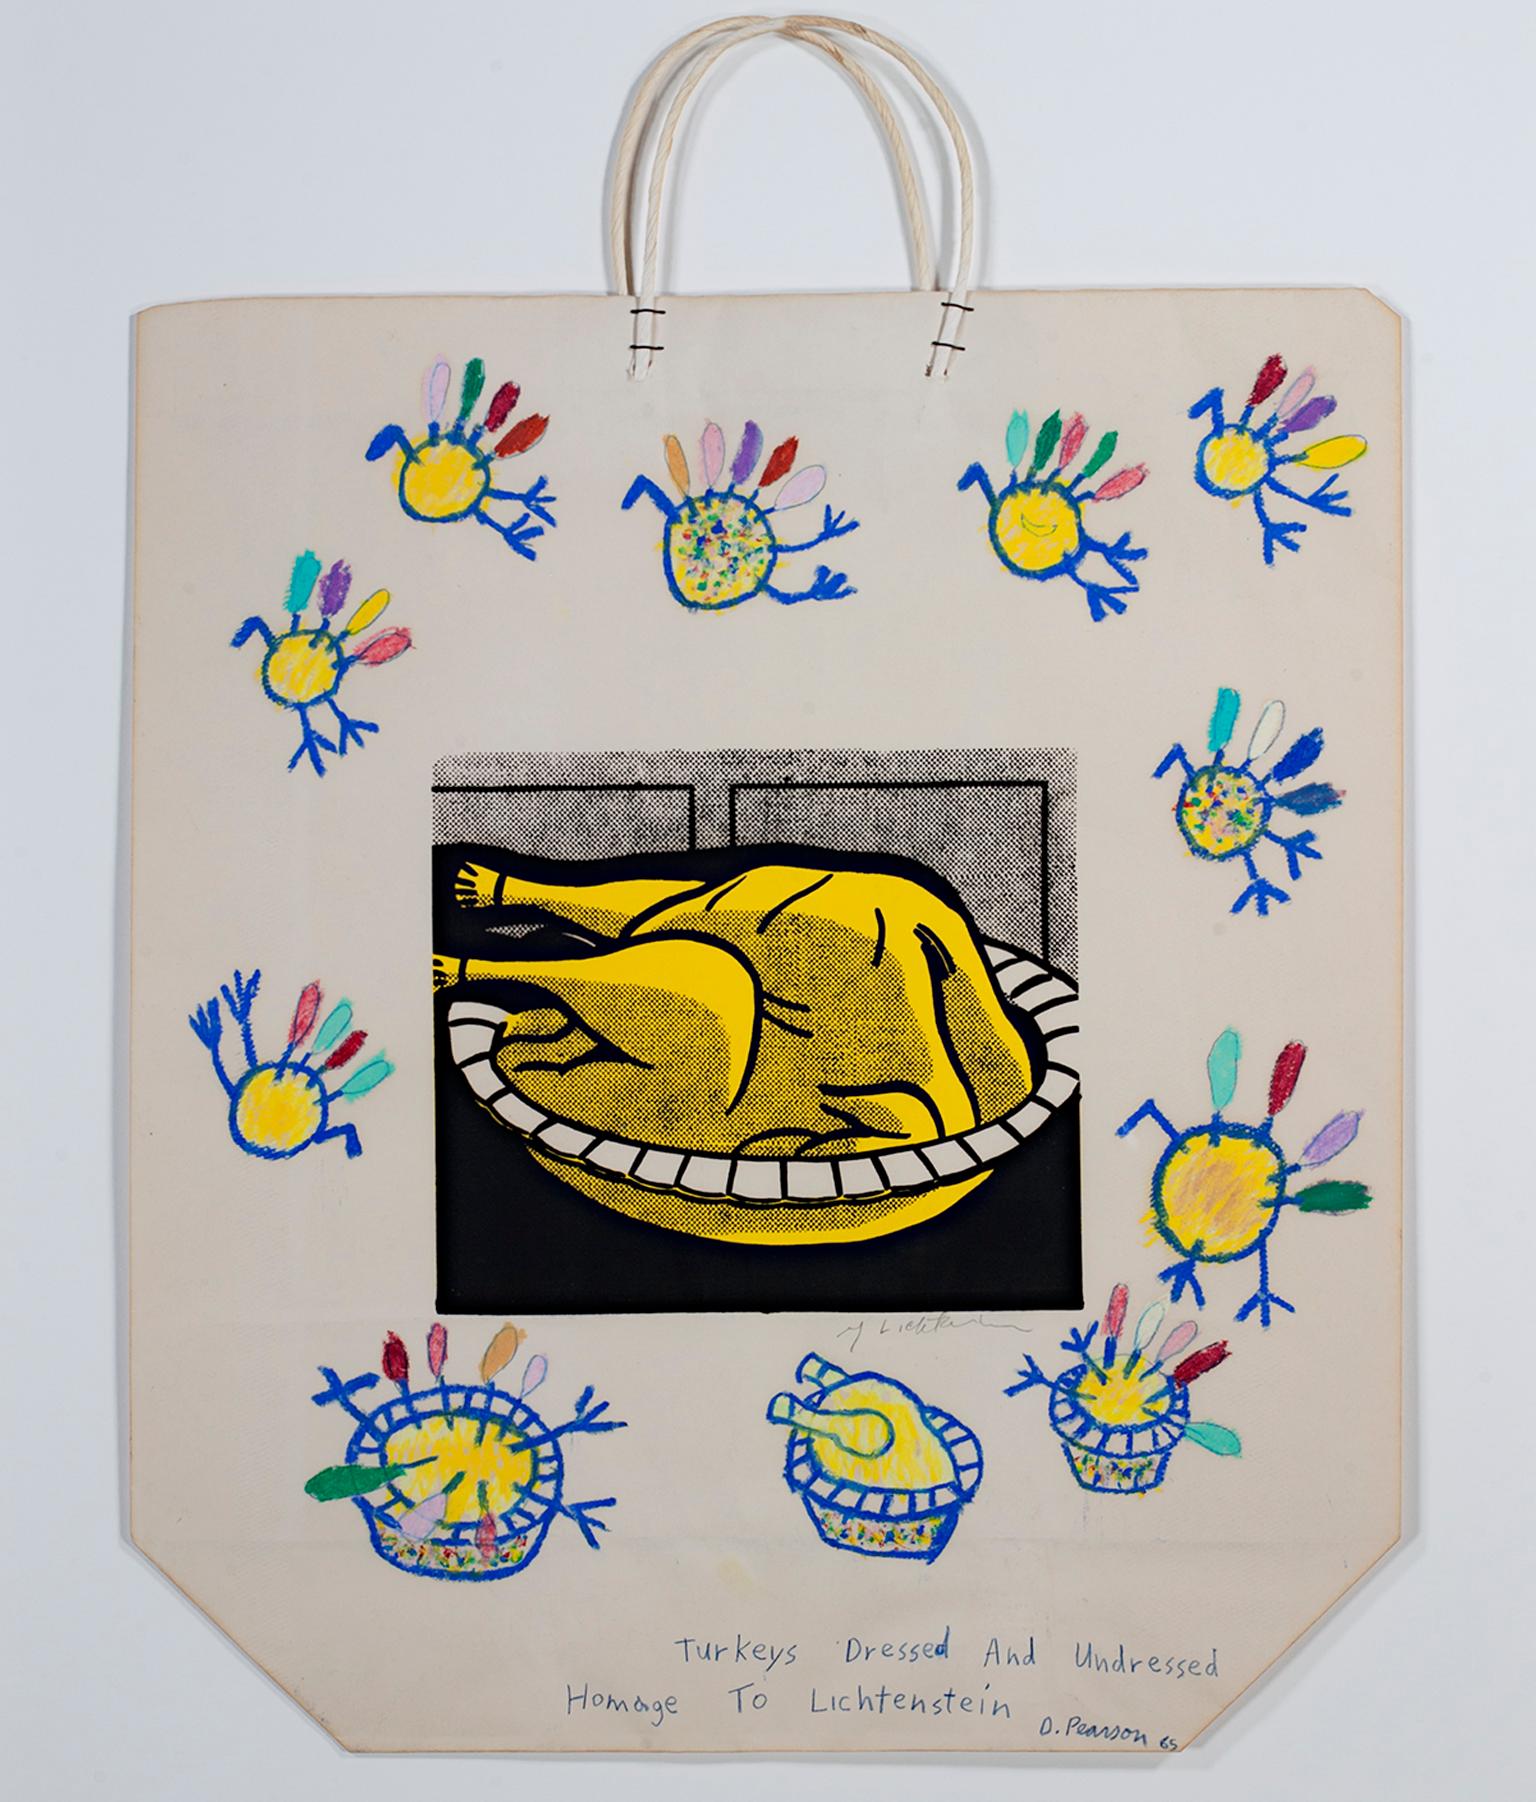 « Turkey Pie-Roy Lichtenstein Homage », sérigraphie, Dennis Pearson & R Lichtenstein - Print de Dennis Pearson & Roy Lichtenstein